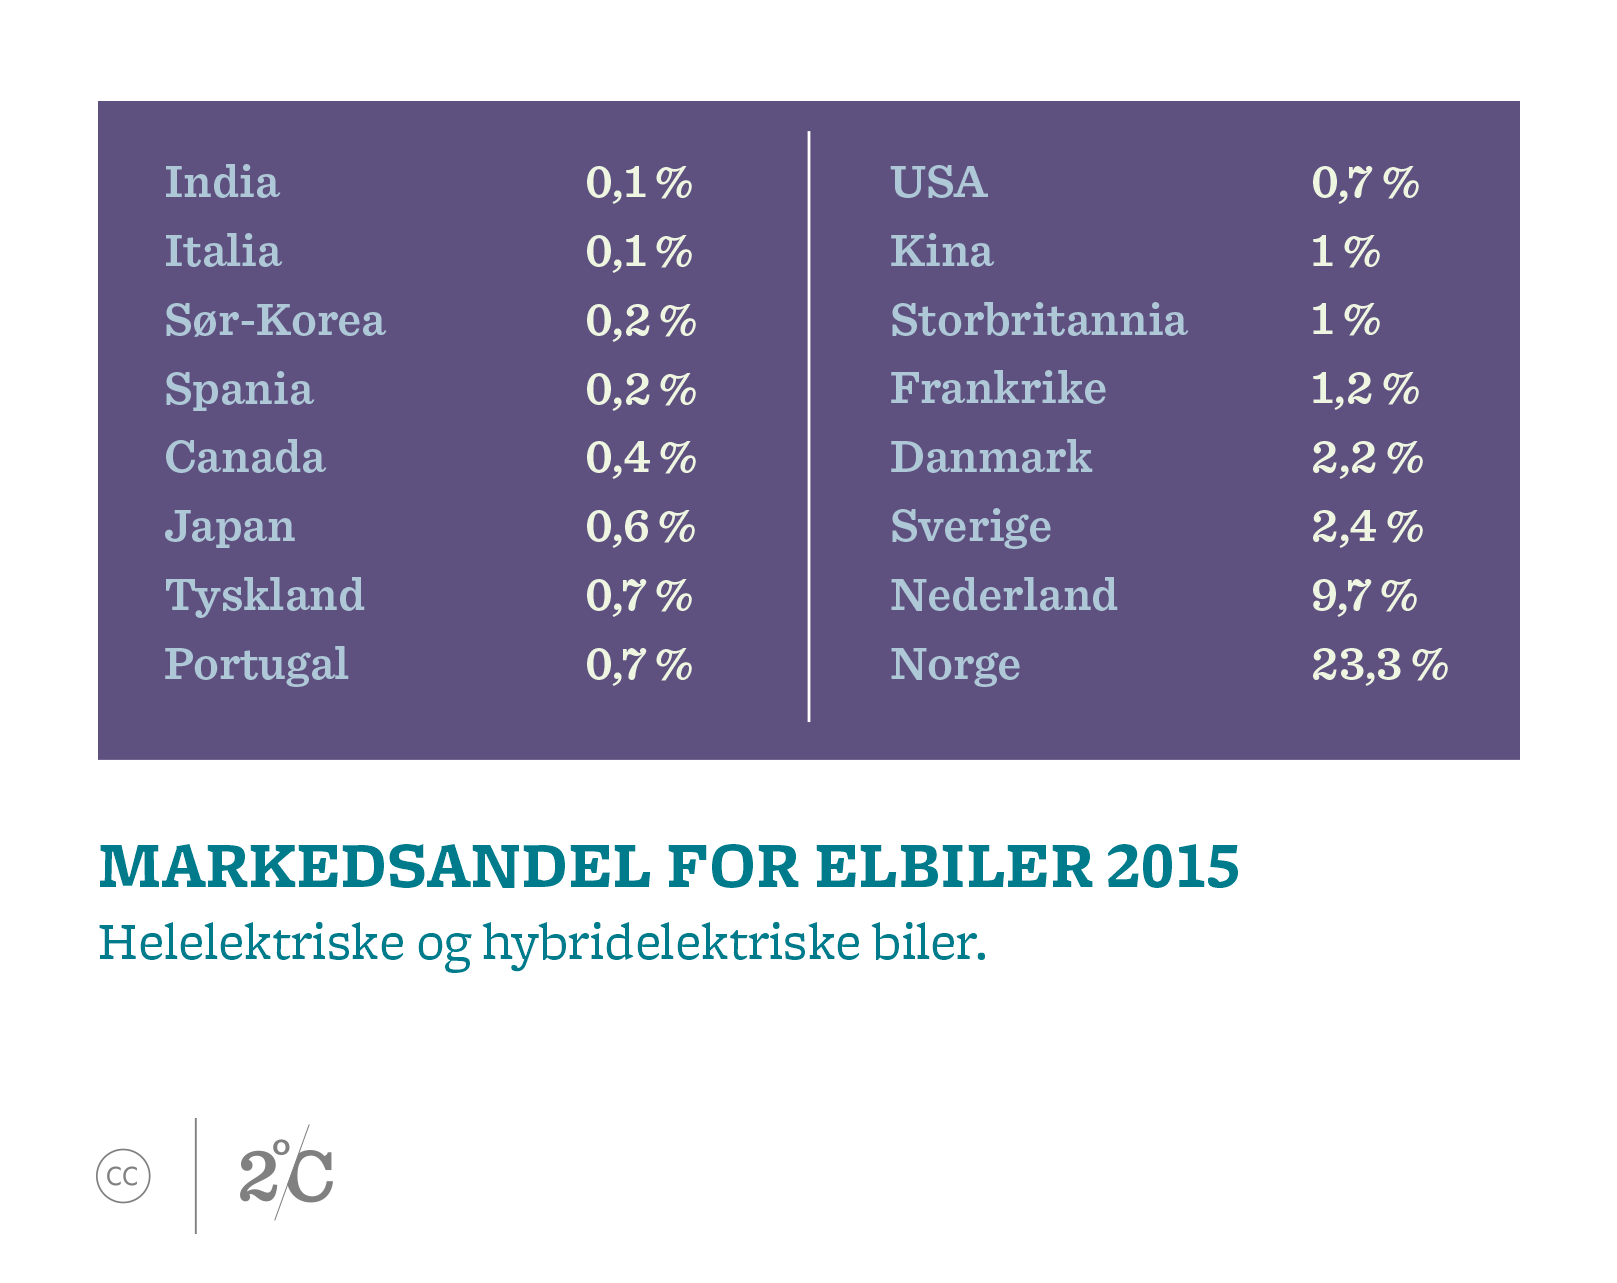 Markedsandel for elbiler 2015. Illustrasjon: Norsk Klimastiftelse